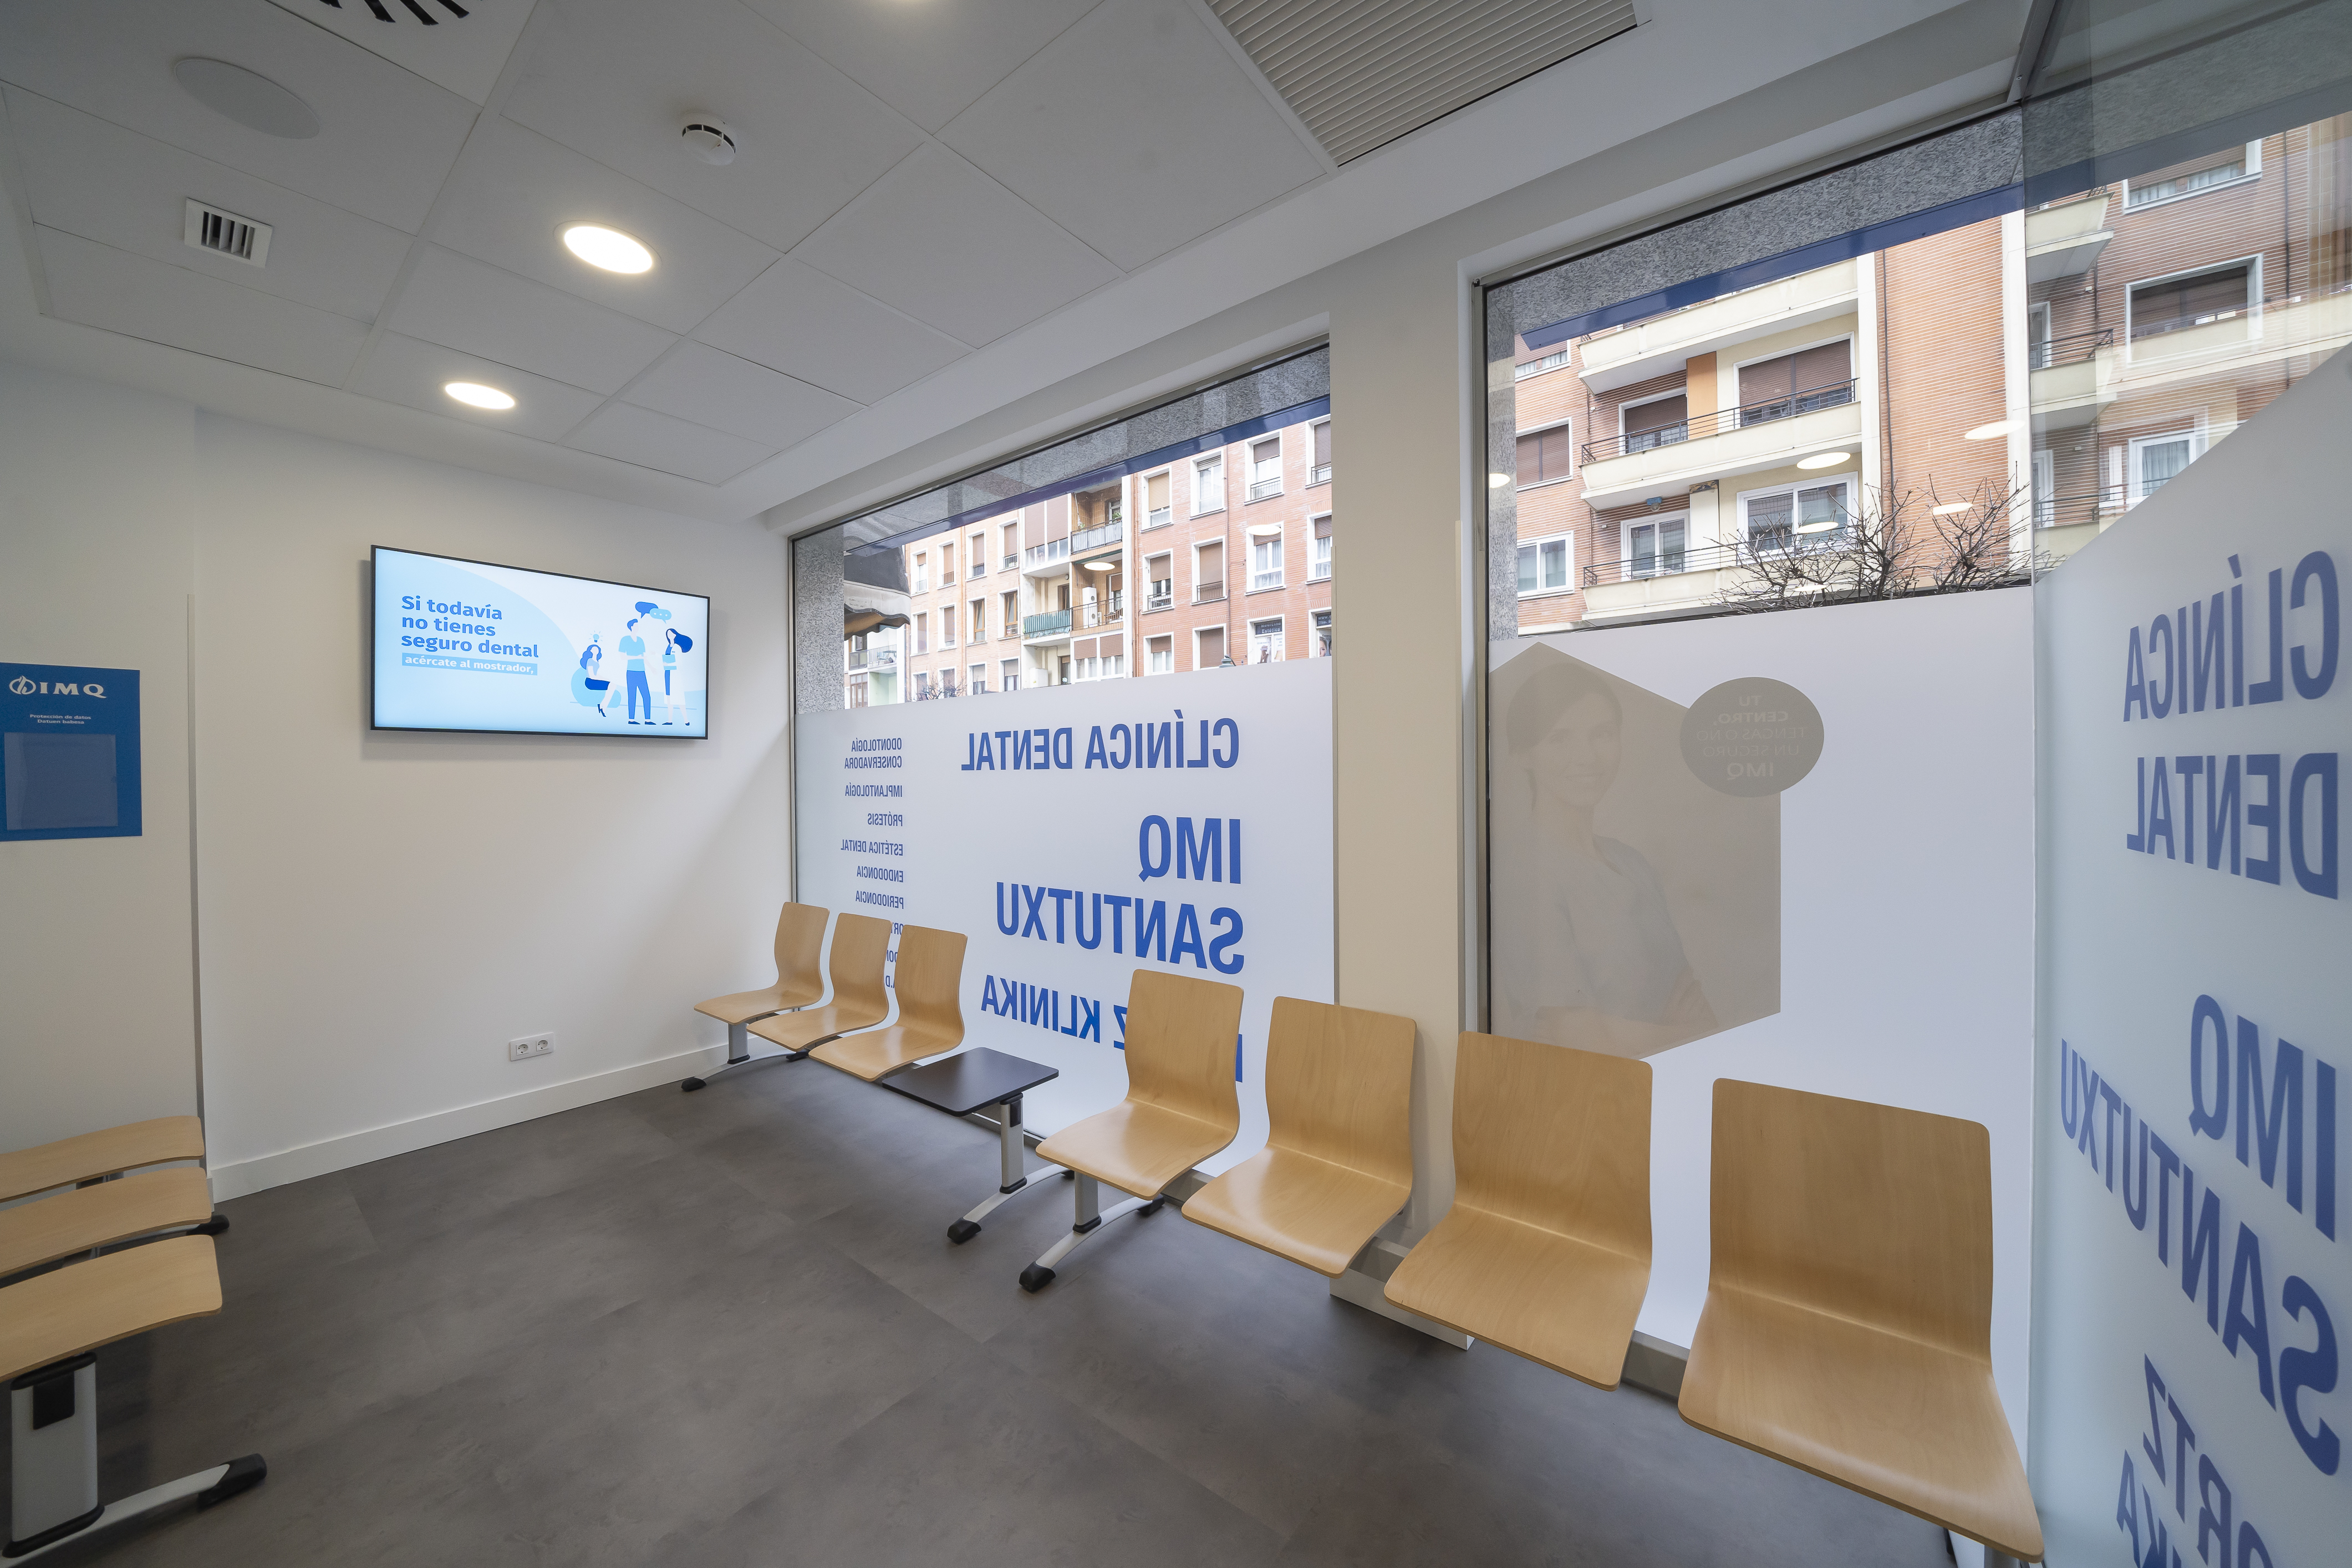 IMQ abre su octava clínica dental en el País Vasco y la cuarta en Bilbao